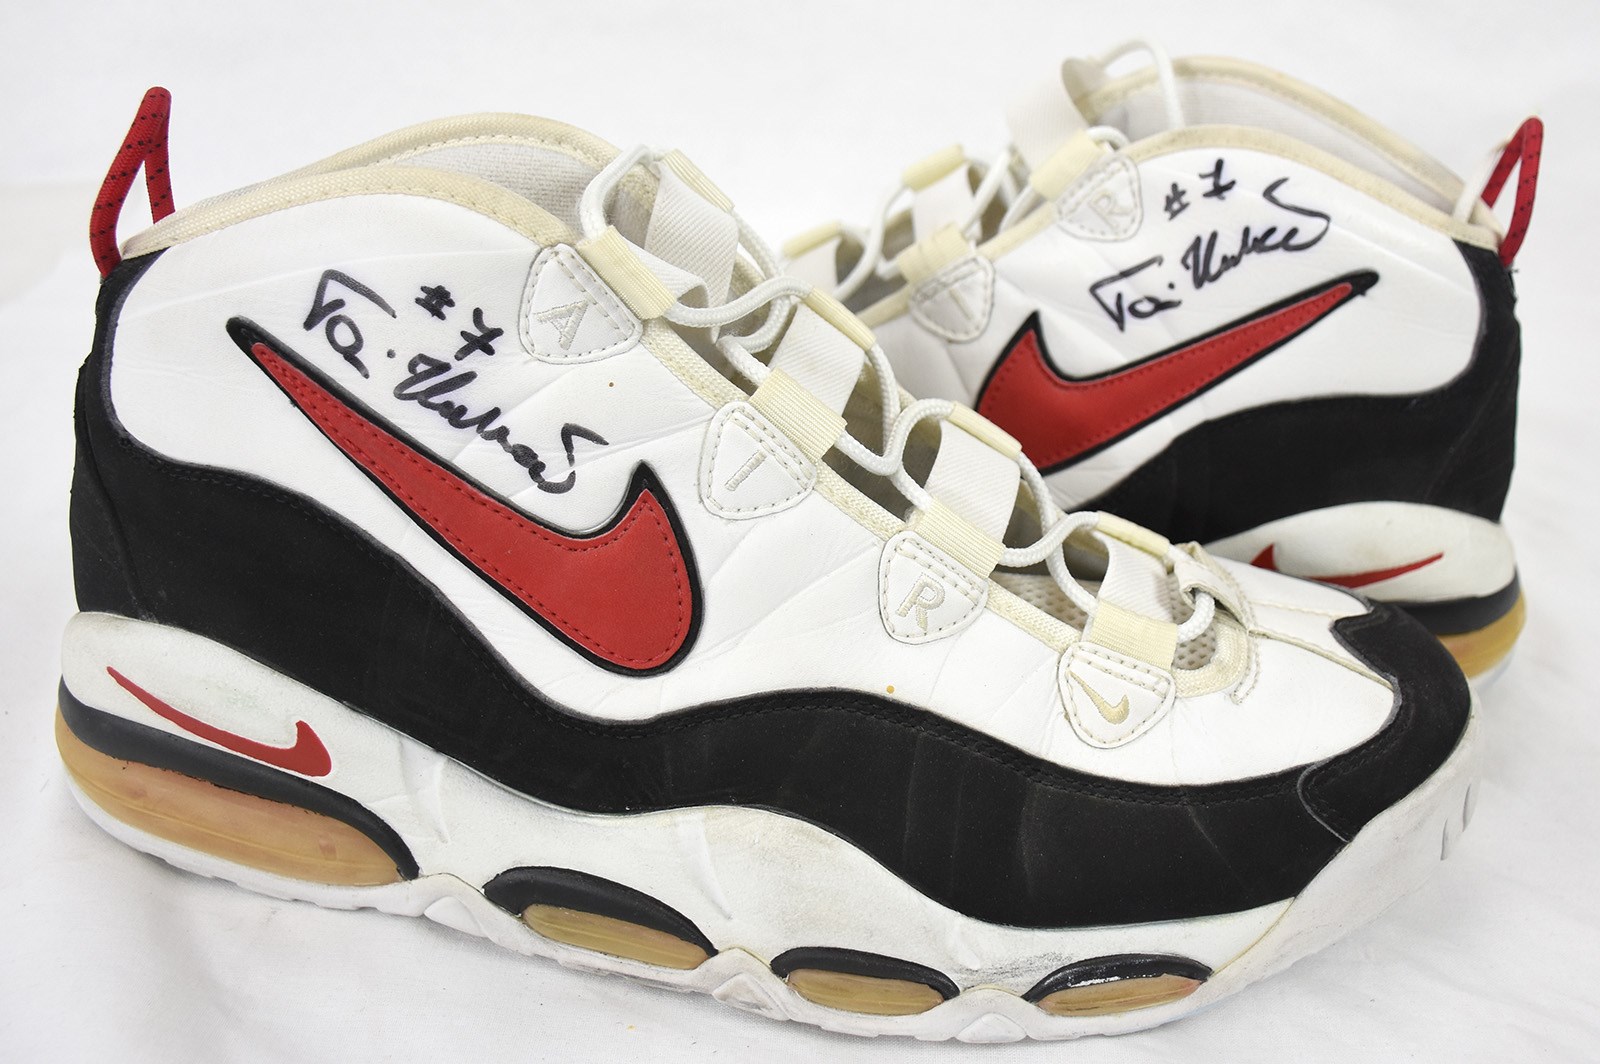 - 1995 Toni Kukoc Game Worn Sneakers